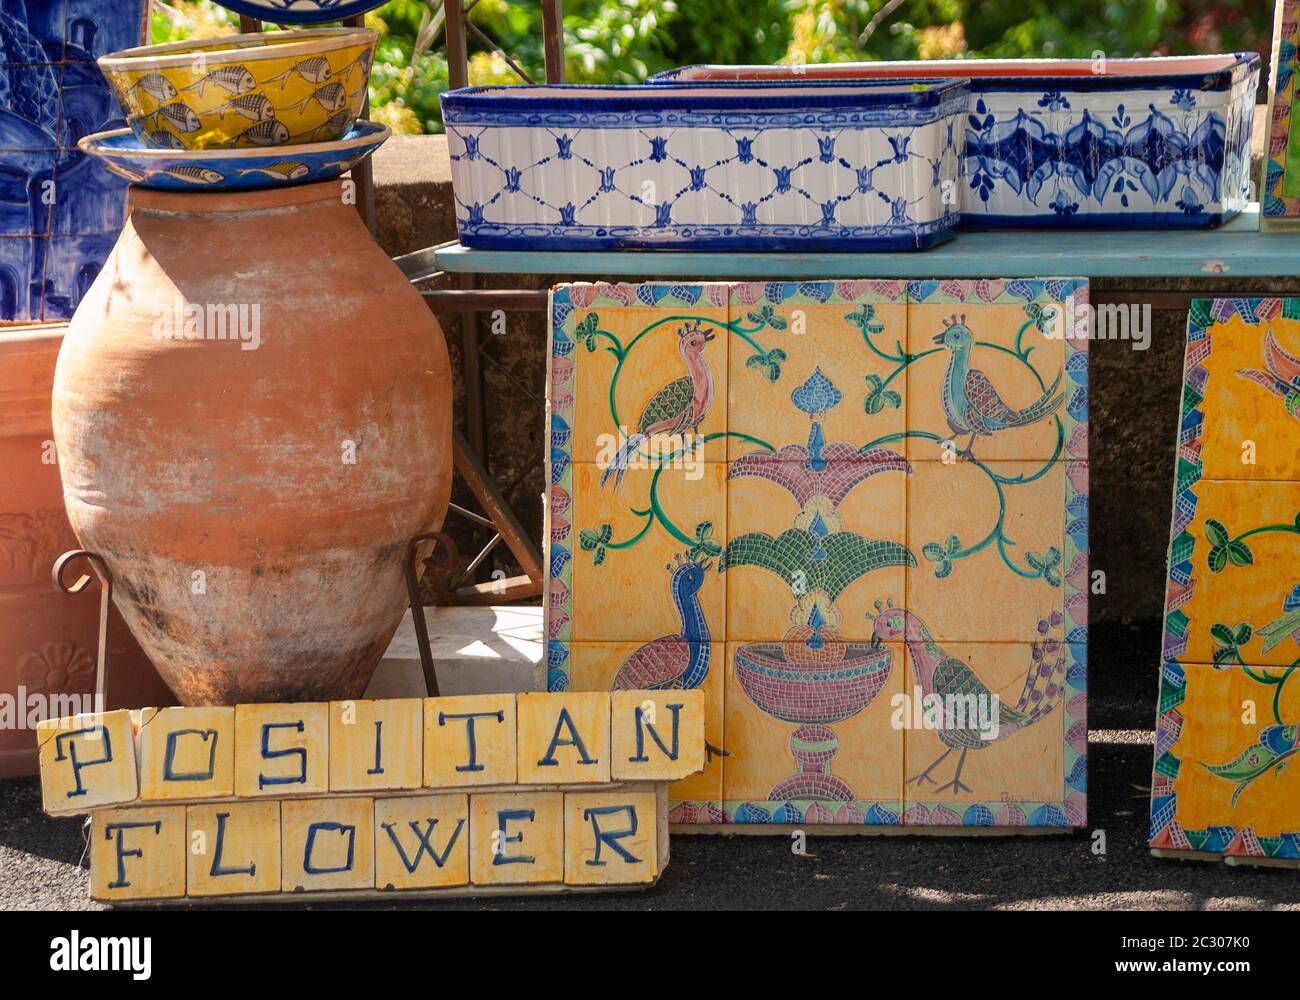 Traditionelle italienische bunte Keramik Garten Tröge und Fliesen Einsätze zusammen mit Terrakotta-Töpfe zum Verkauf im Geschäft in Positano, Amalfiküste, Italien Stockfoto